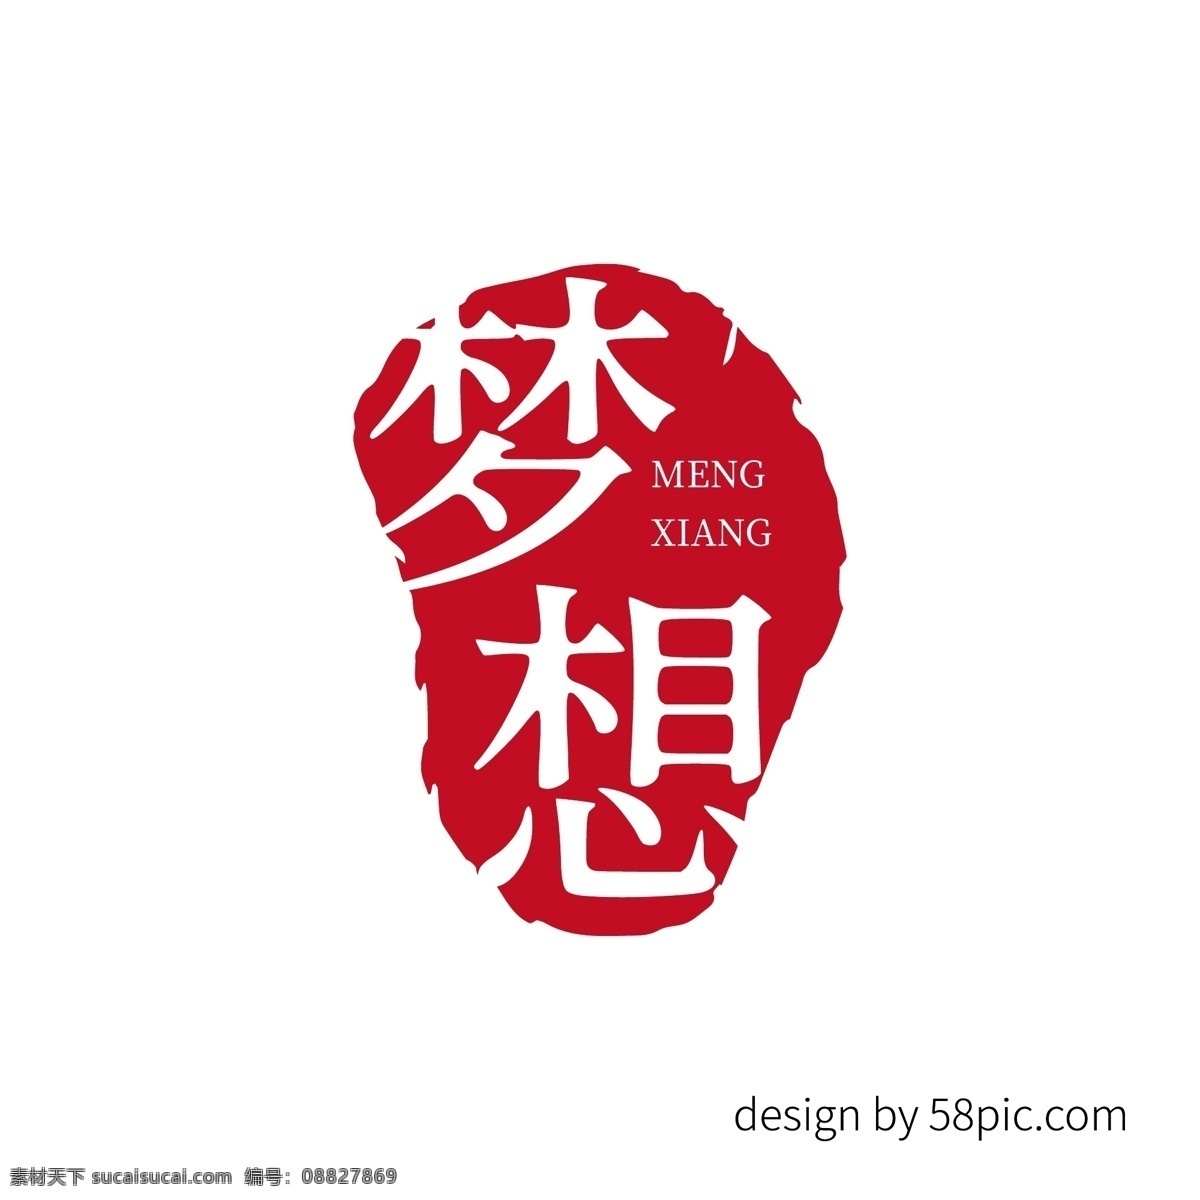 梦想 中国 古风 印章 艺术 字体 古风字体 印章字体 印章艺术字体 梦想字体